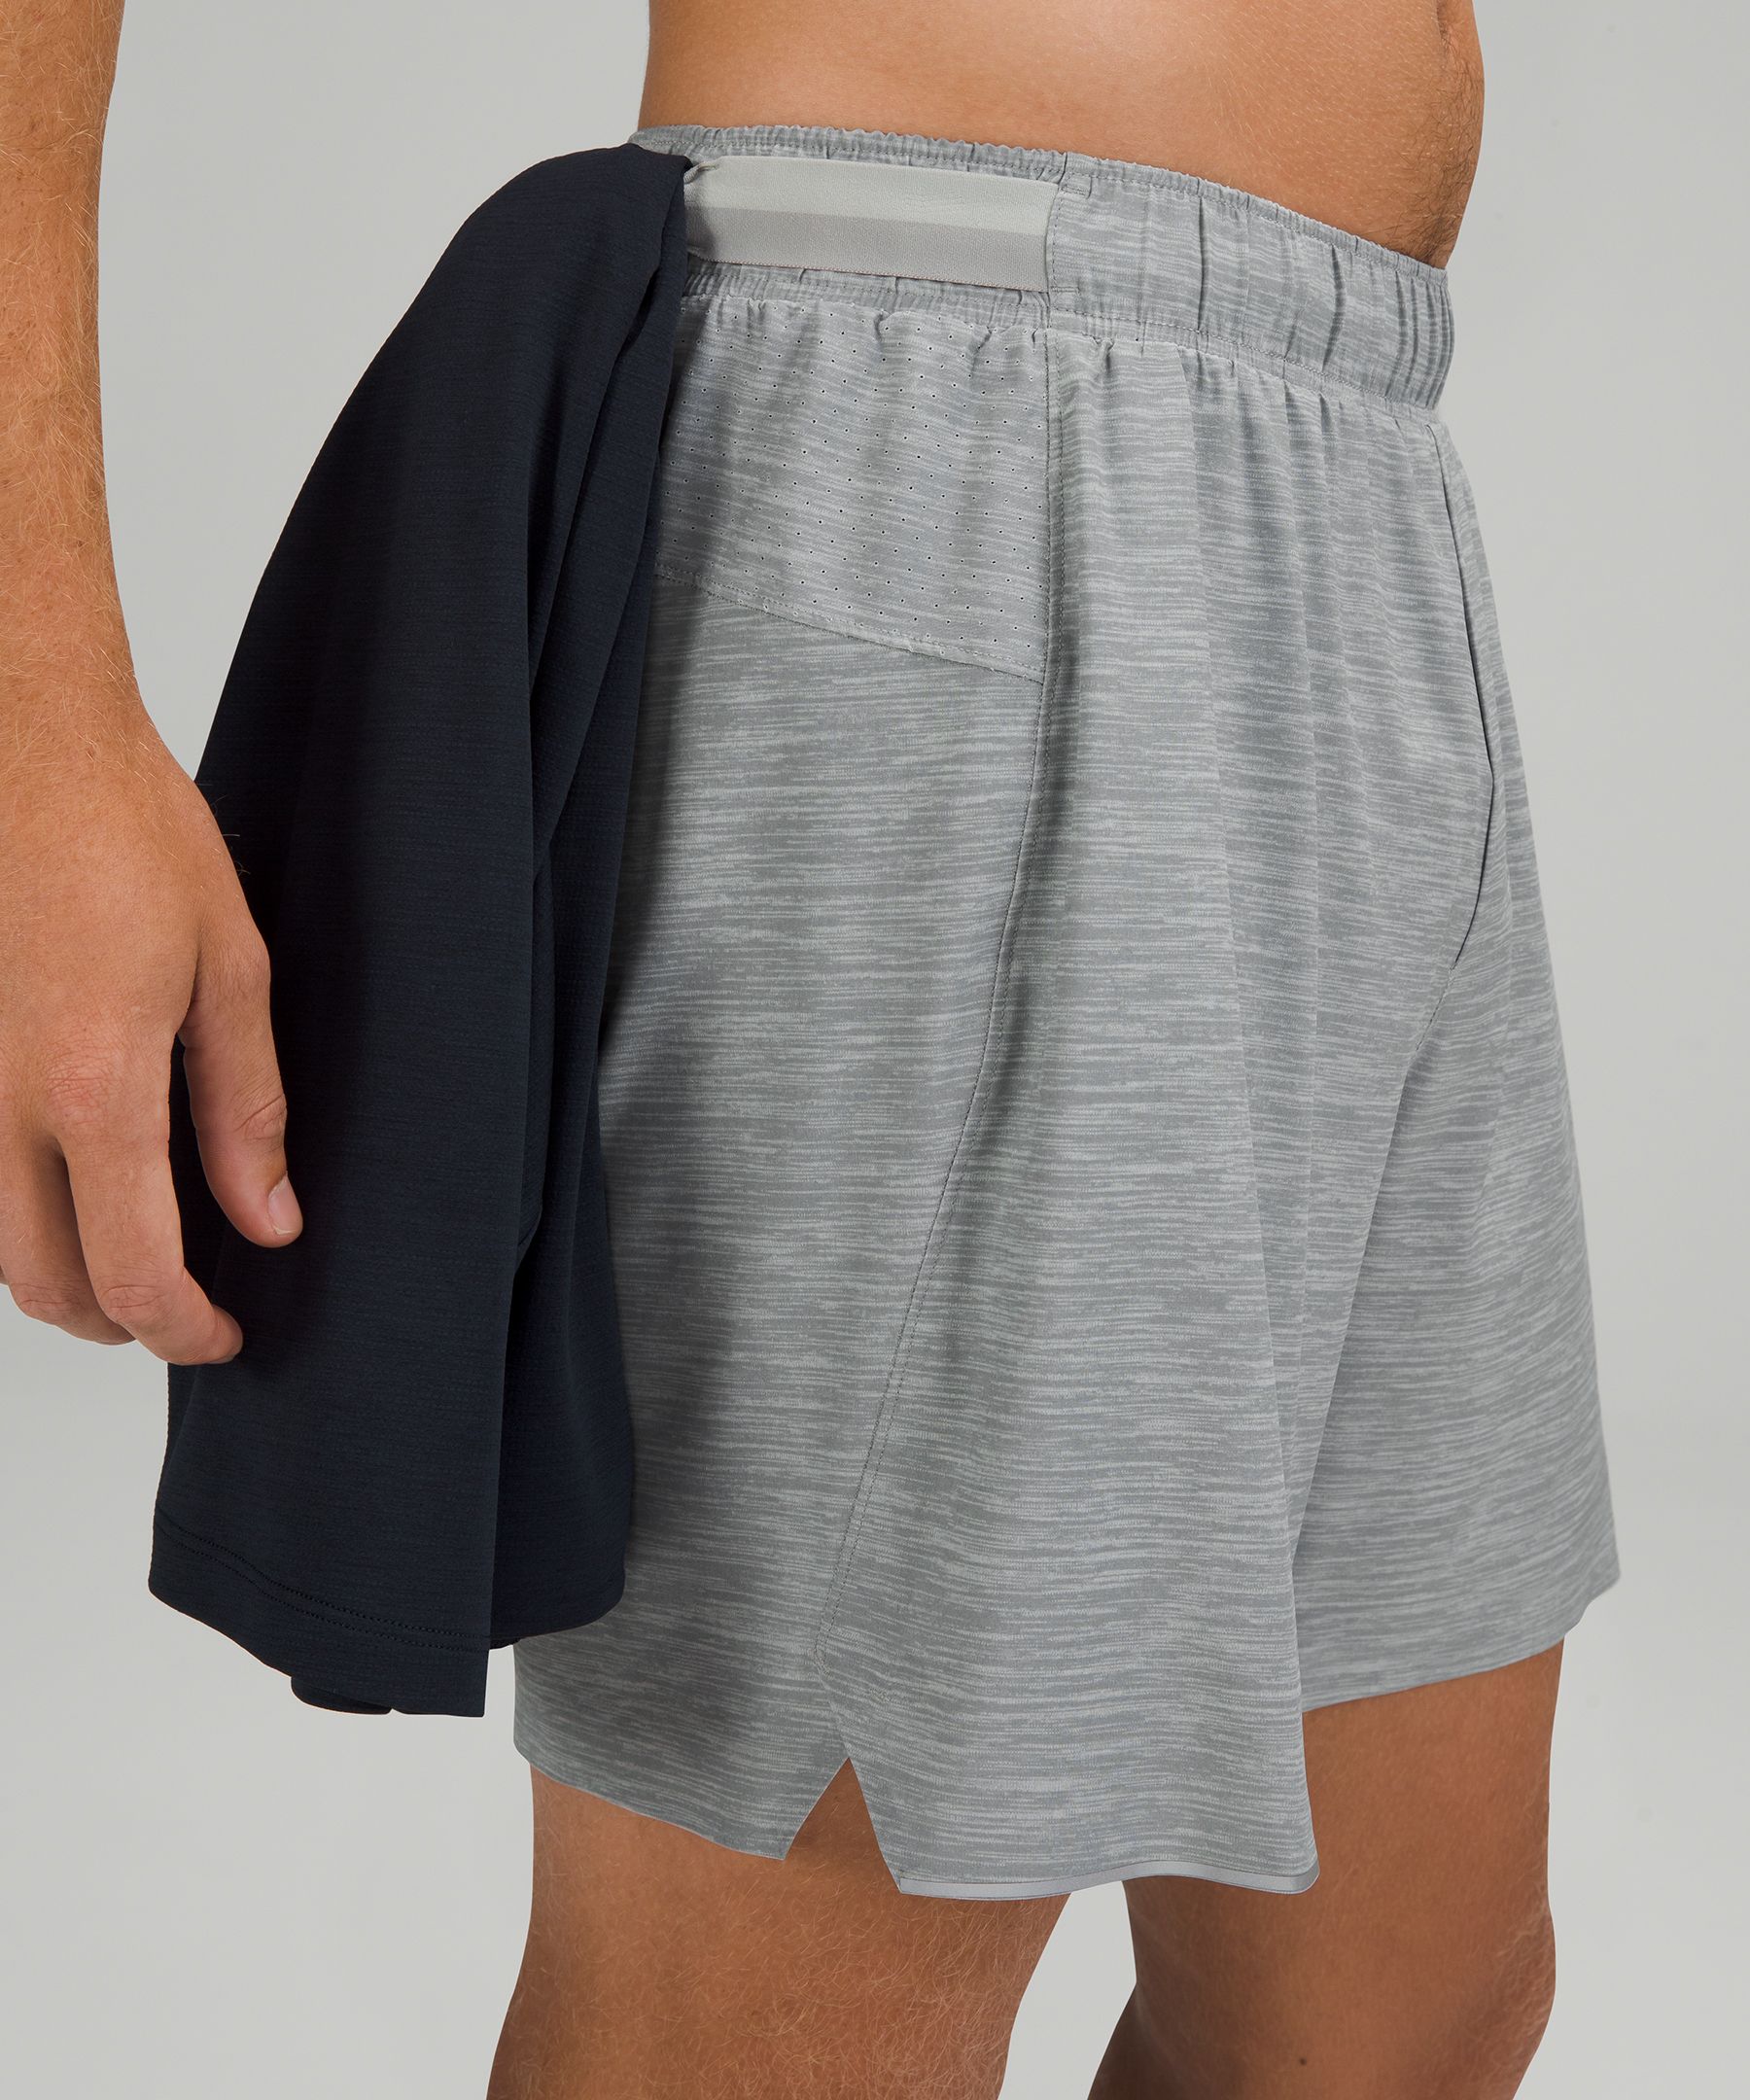 grey lululemon shorts